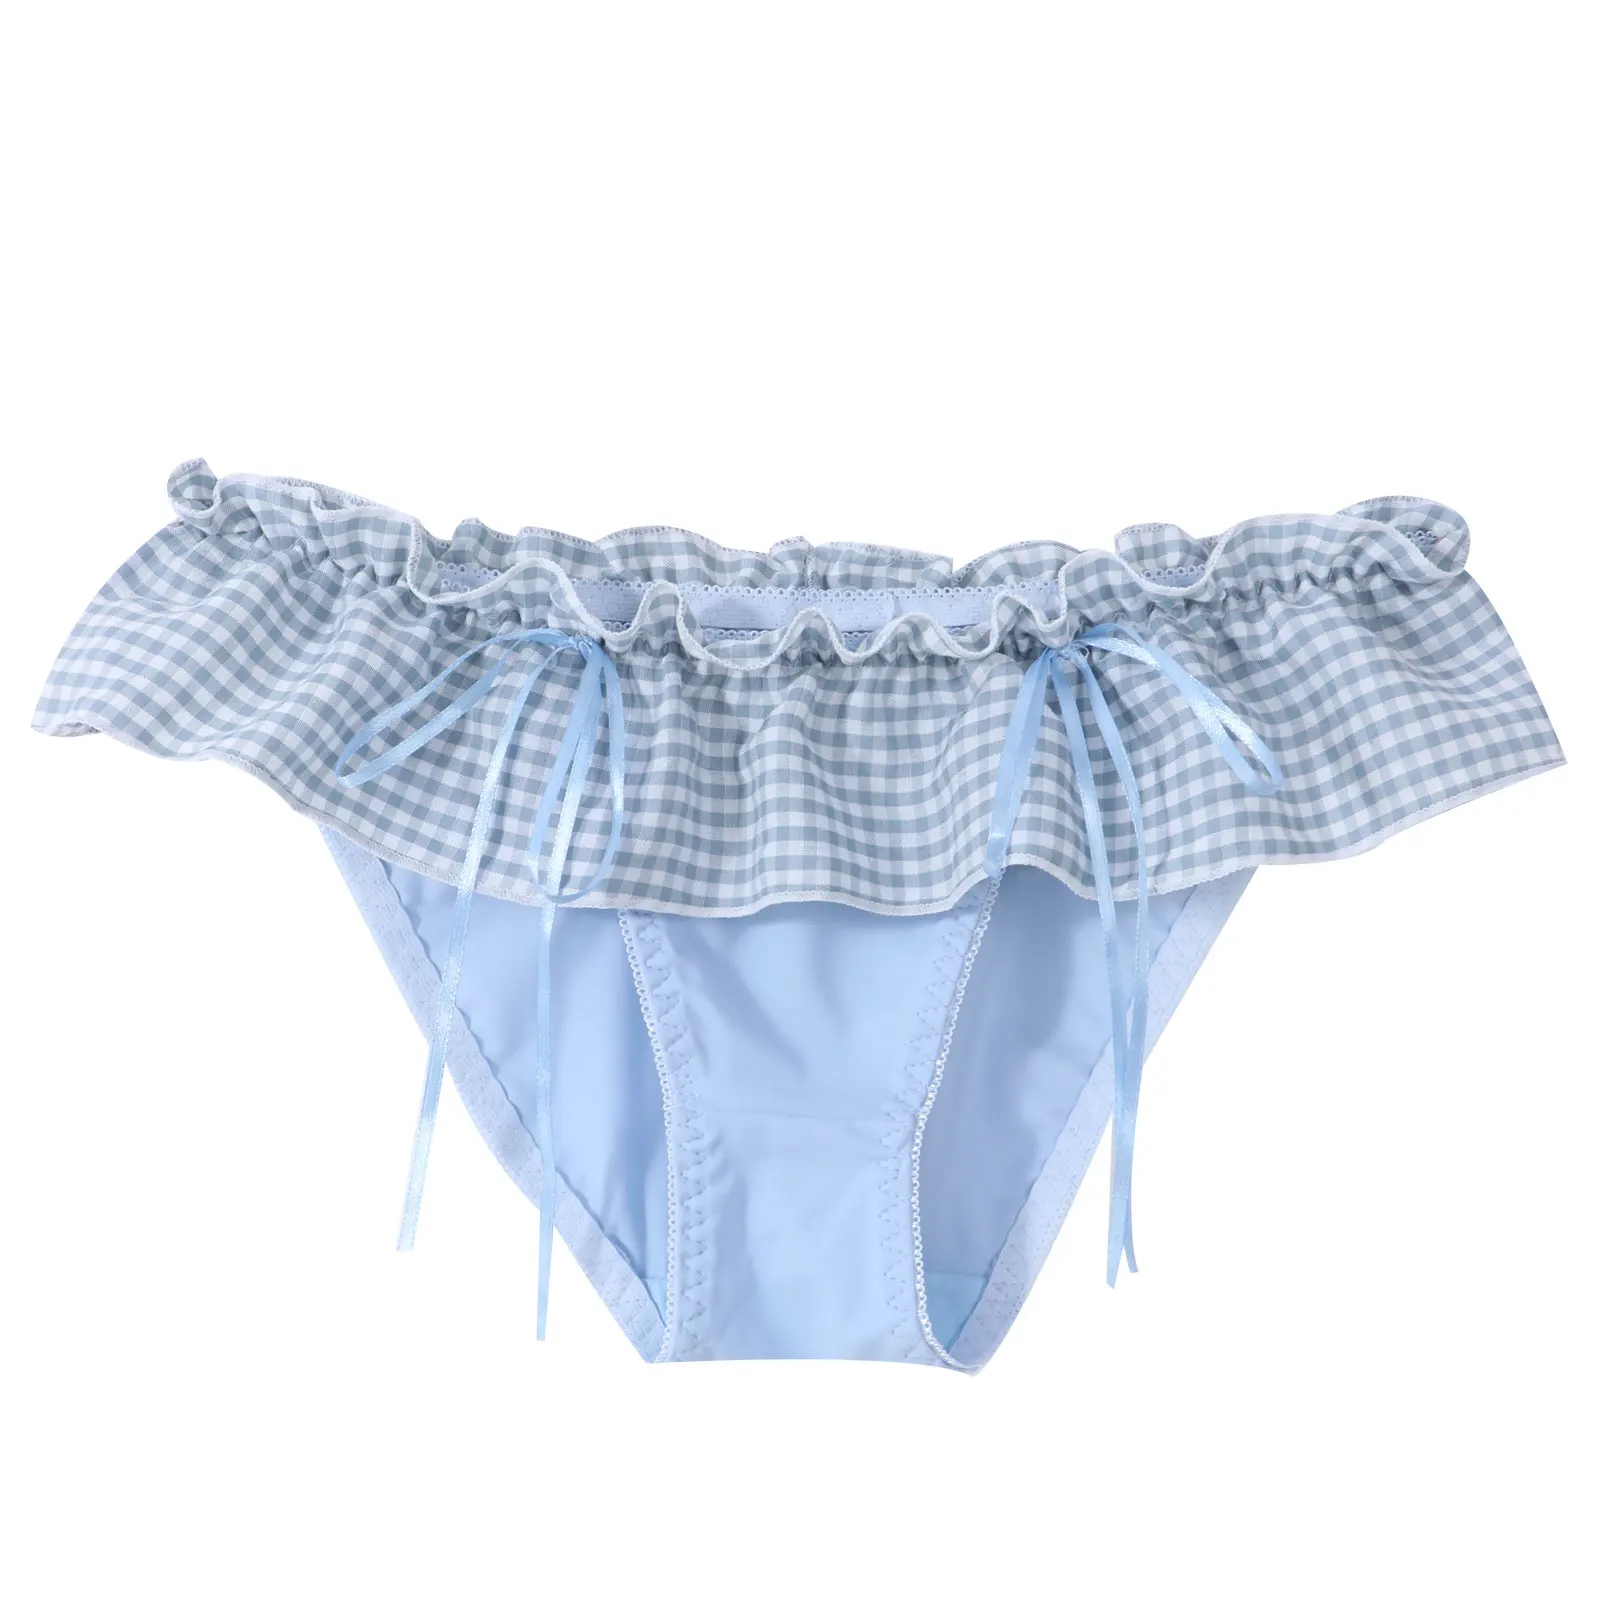 Sissy Male Gay Underwear Men's Panties Ruffle Lace Plaid Print Thongs T-back Panties Low Waist Bowknot Lingerie Underpants men in briefs